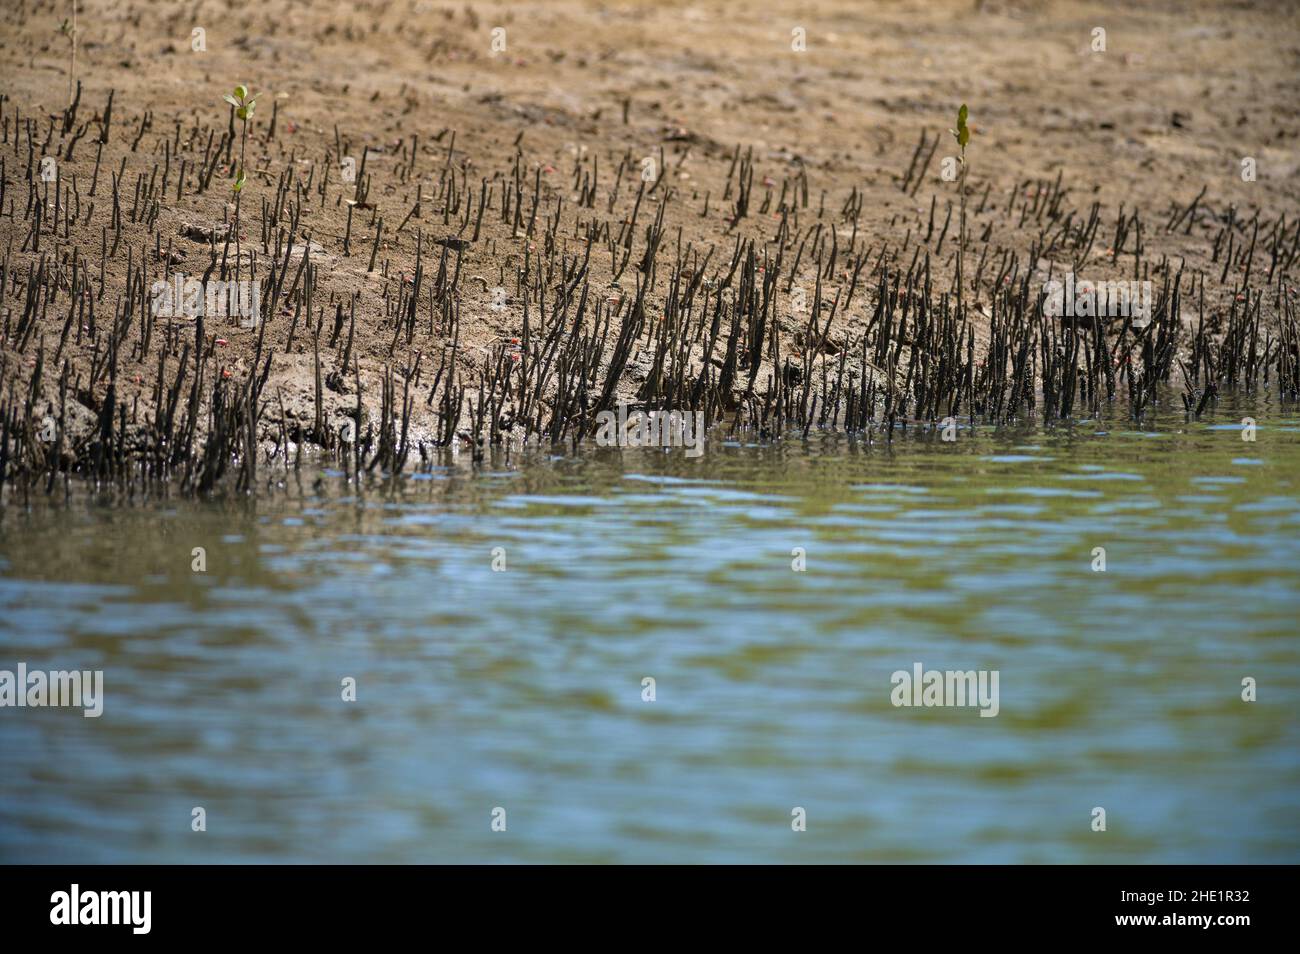 Racines de mangrove (Rhizophora mucronata) croissant le long du rivage de la rivière saumâtre près de l'océan, Kenya Banque D'Images